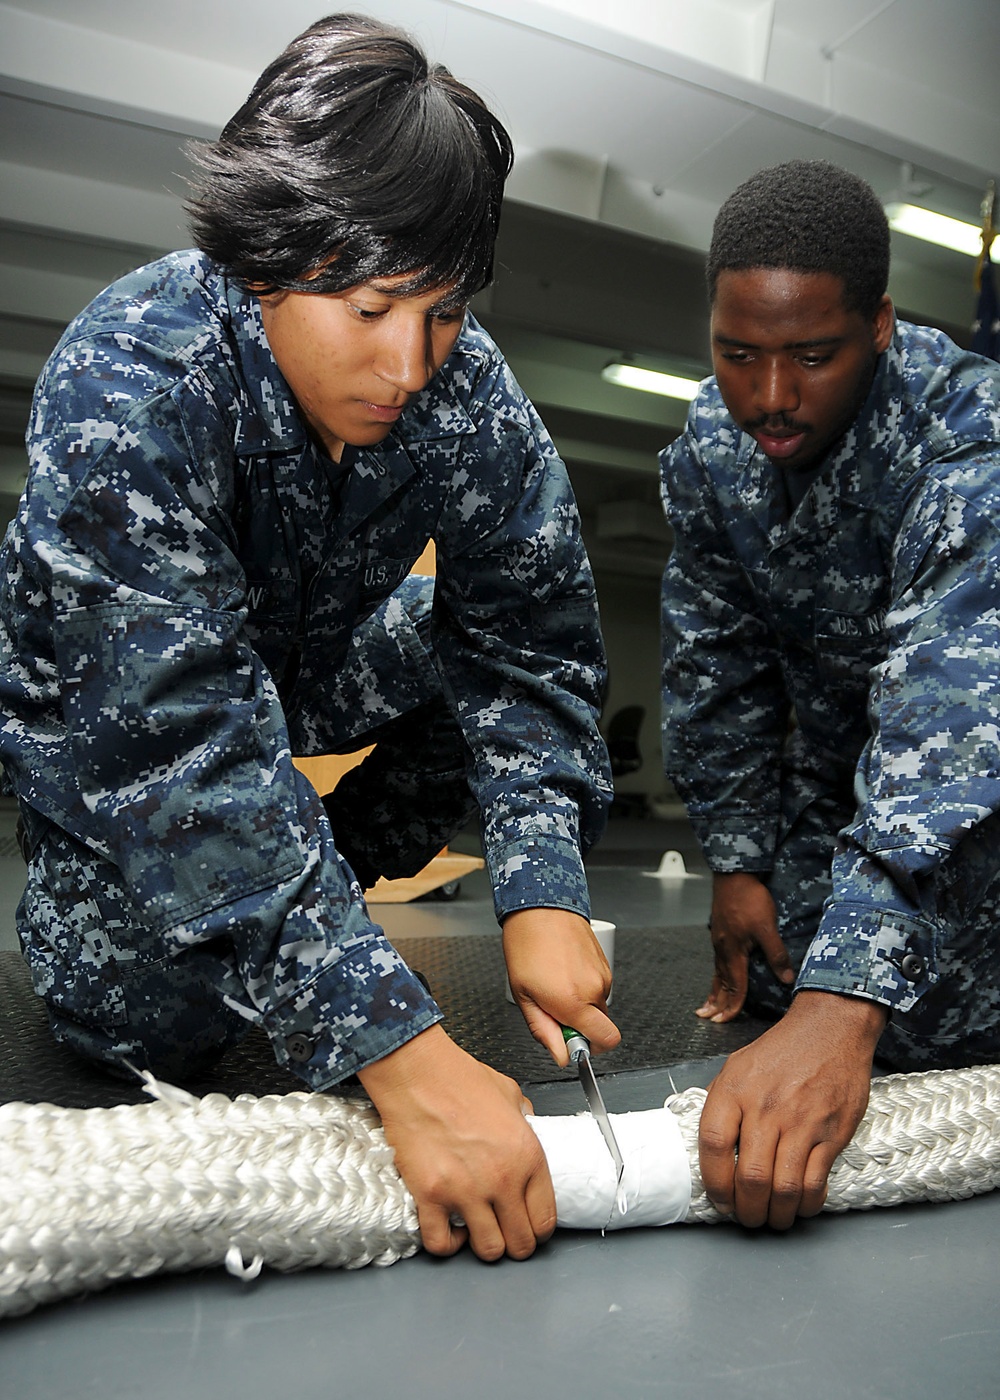 USS Ronald Reagan sailors cut mooring line